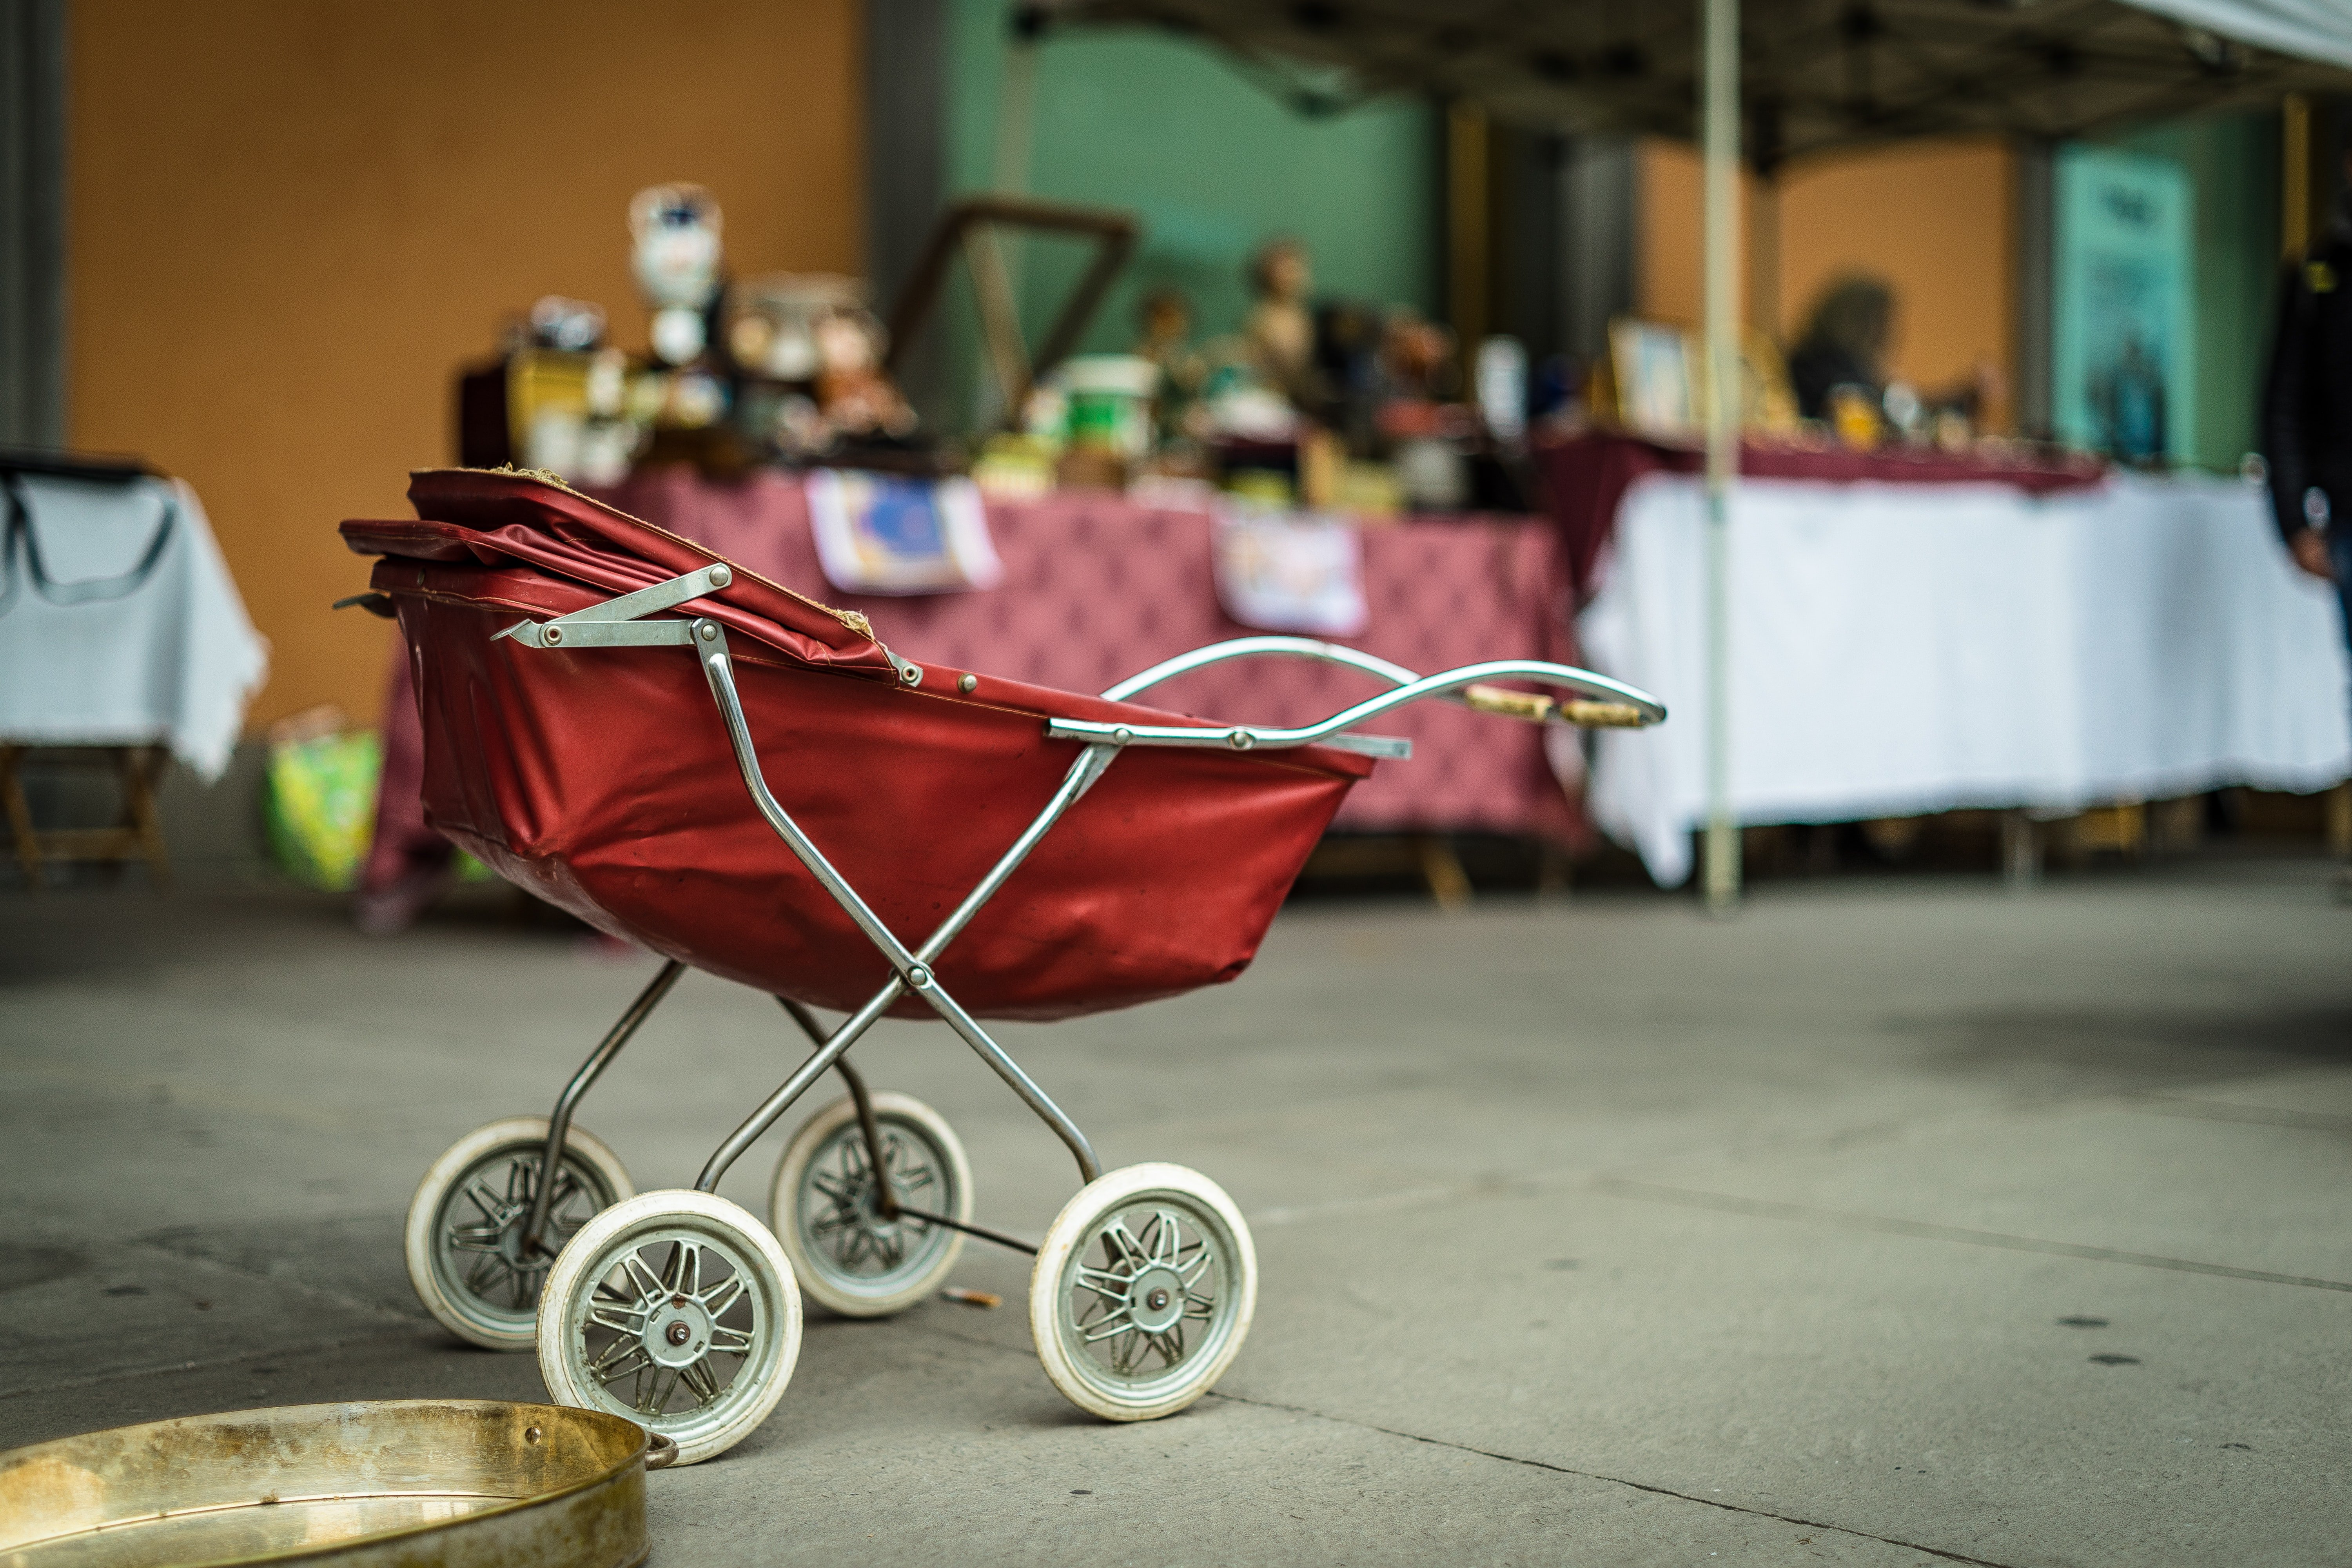 Anne hat ihren schönen alten Kinderwagen auf dem Flohmarkt verkauft. | Quelle: Unsplash